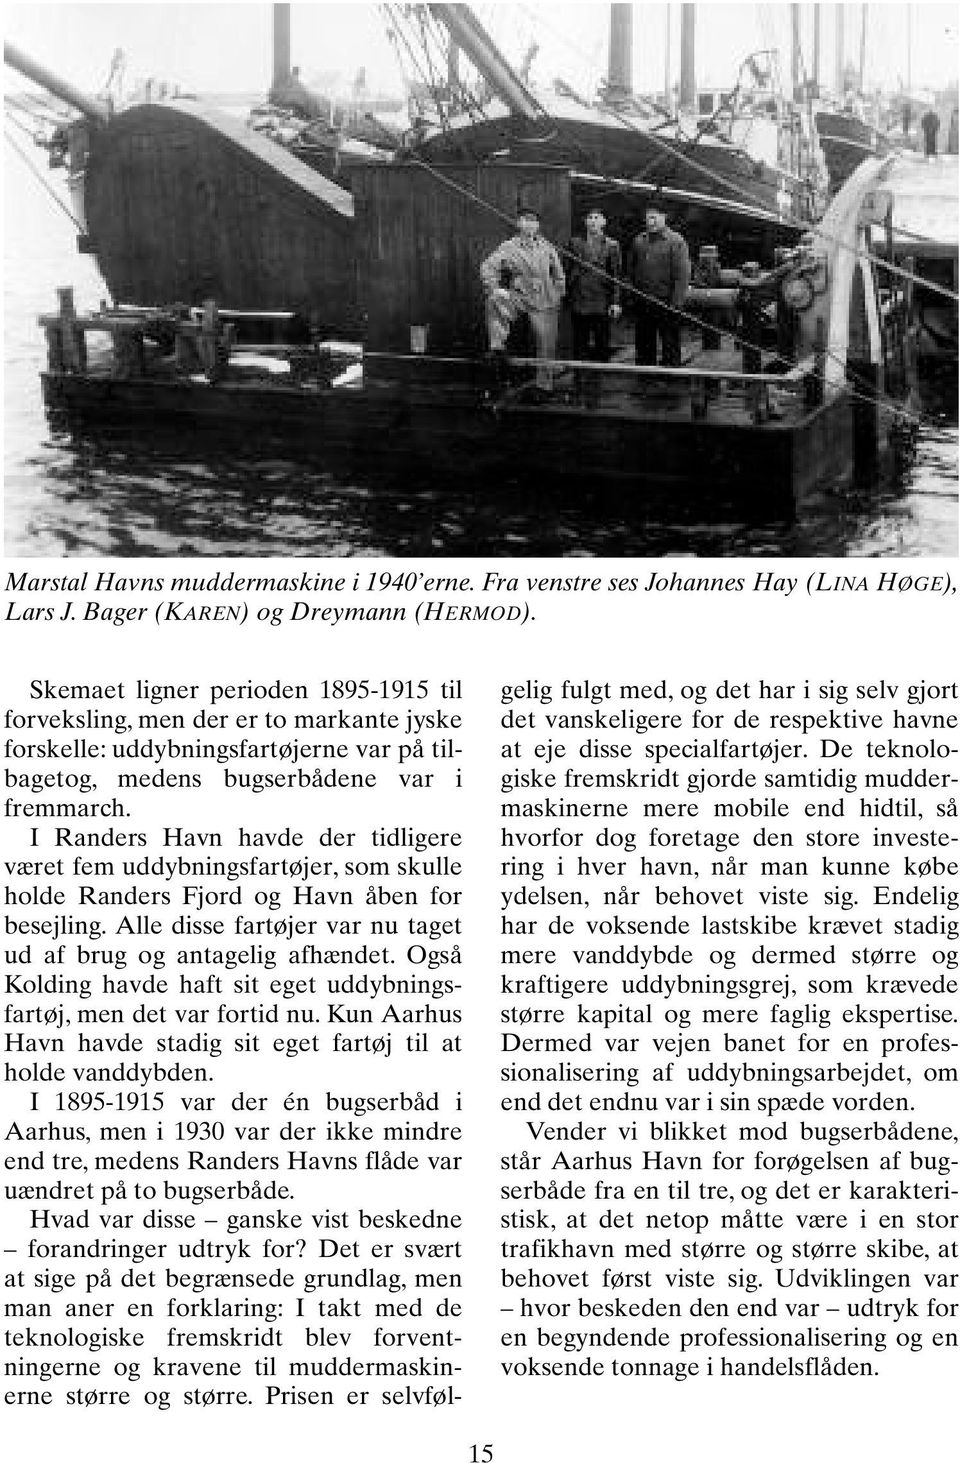 I Randers Havn havde der tidligere været fem uddybningsfartøjer, som skulle holde Randers Fjord og Havn åben for besejling. Alle disse fartøjer var nu taget ud af brug og antagelig afhændet.